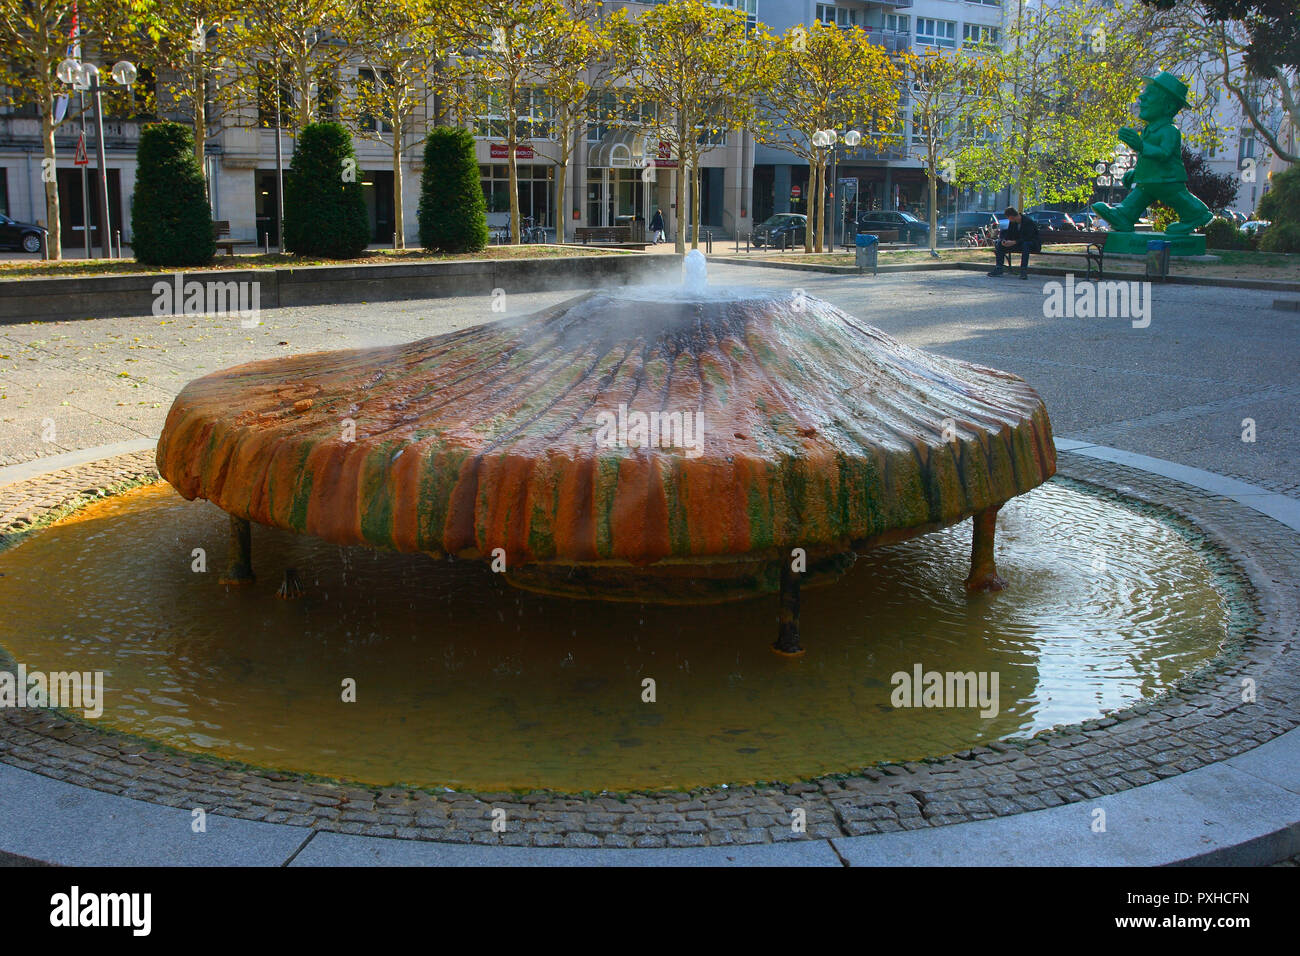 Kochbrunnen hot springs fountain. Wiesbaden. Hessen. Germany Stock Photo